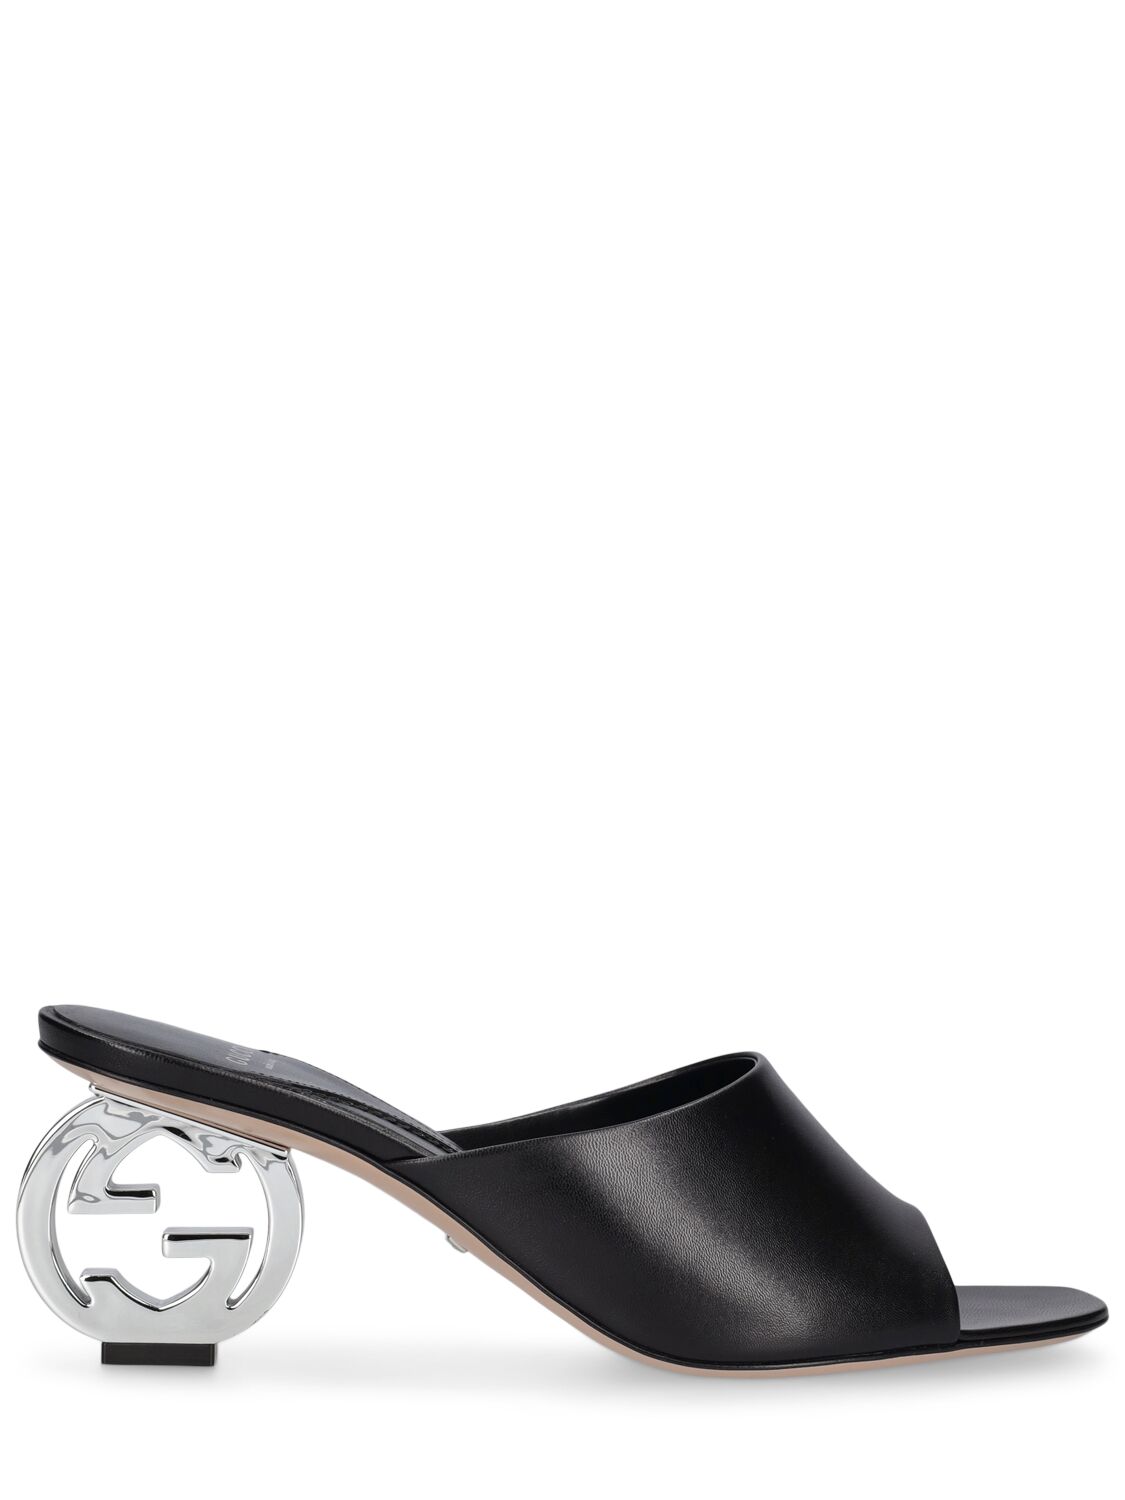 Image of 65mm Bella Leather Slide Sandals